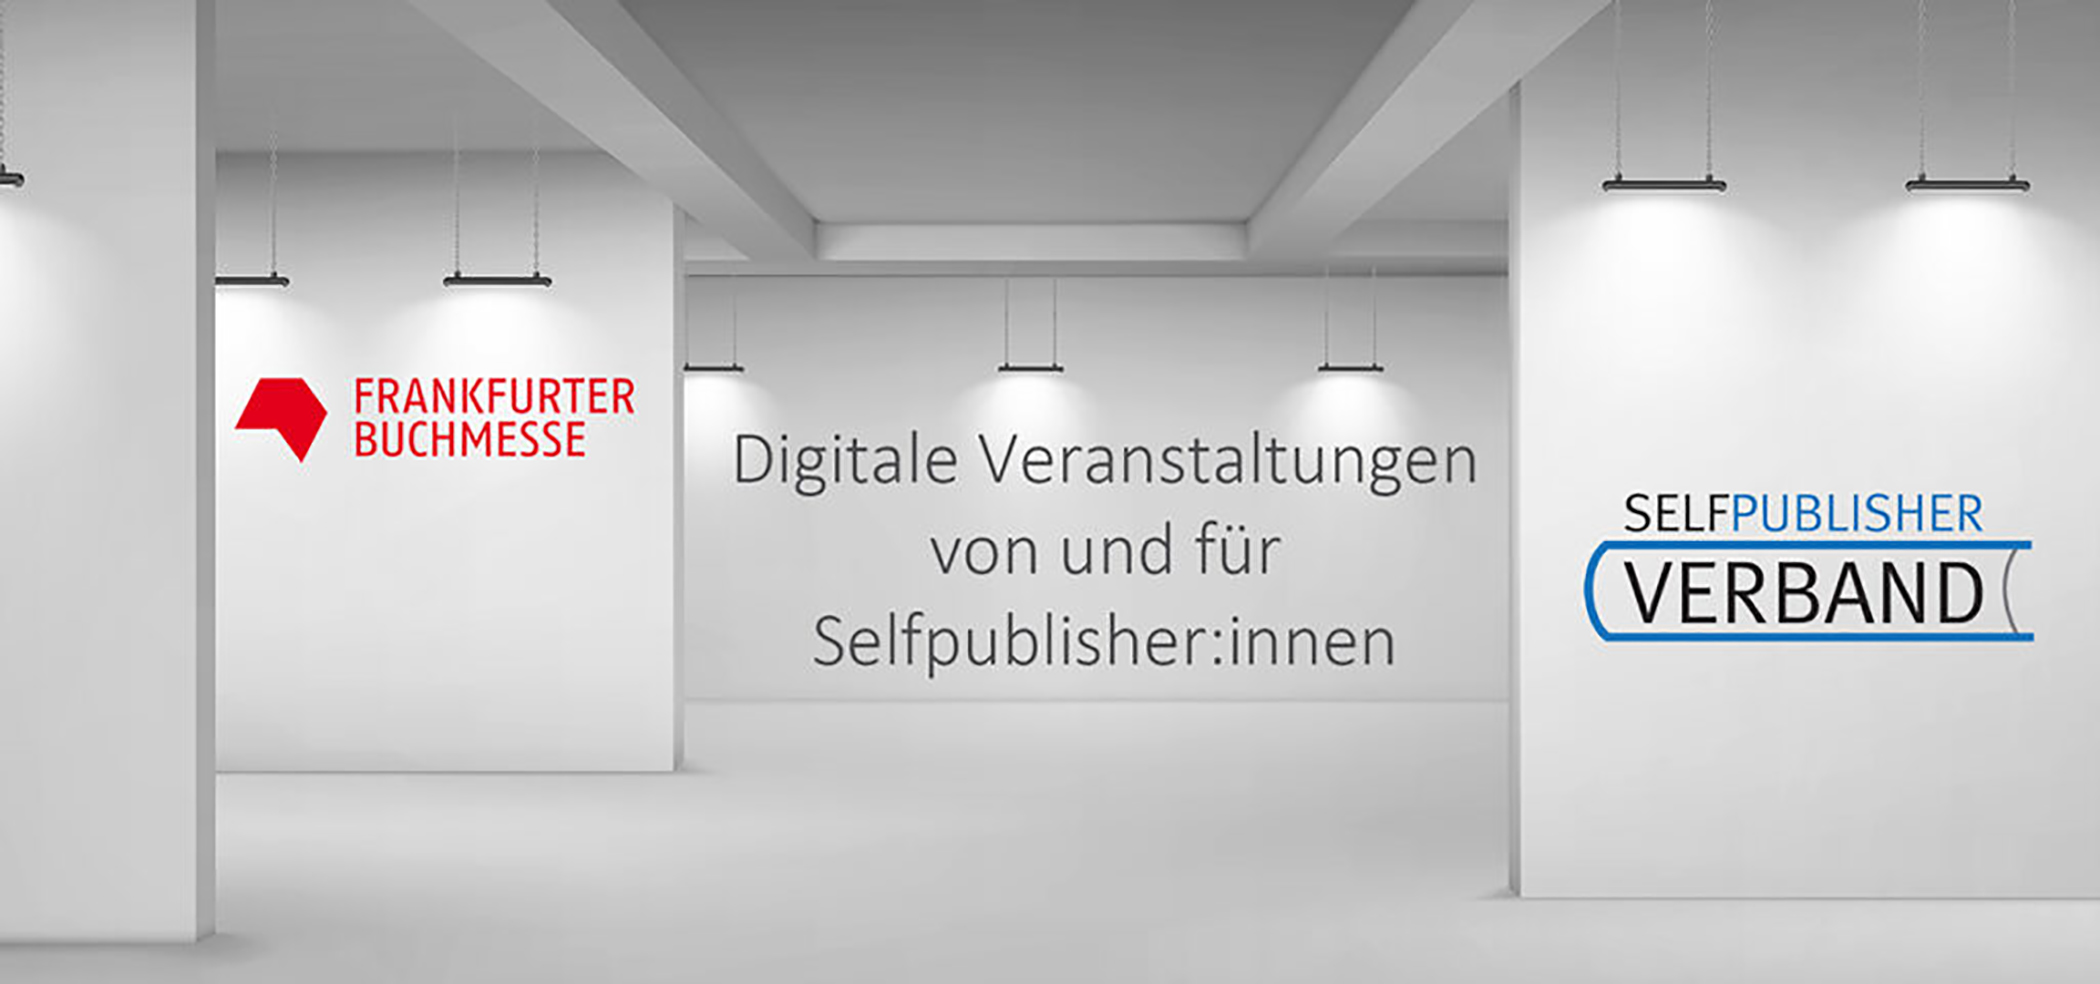 Die Aktionen des Selfpublisher-Verbandes zur Frankfurter Buchmesse 2021 – Präsenz und Digital